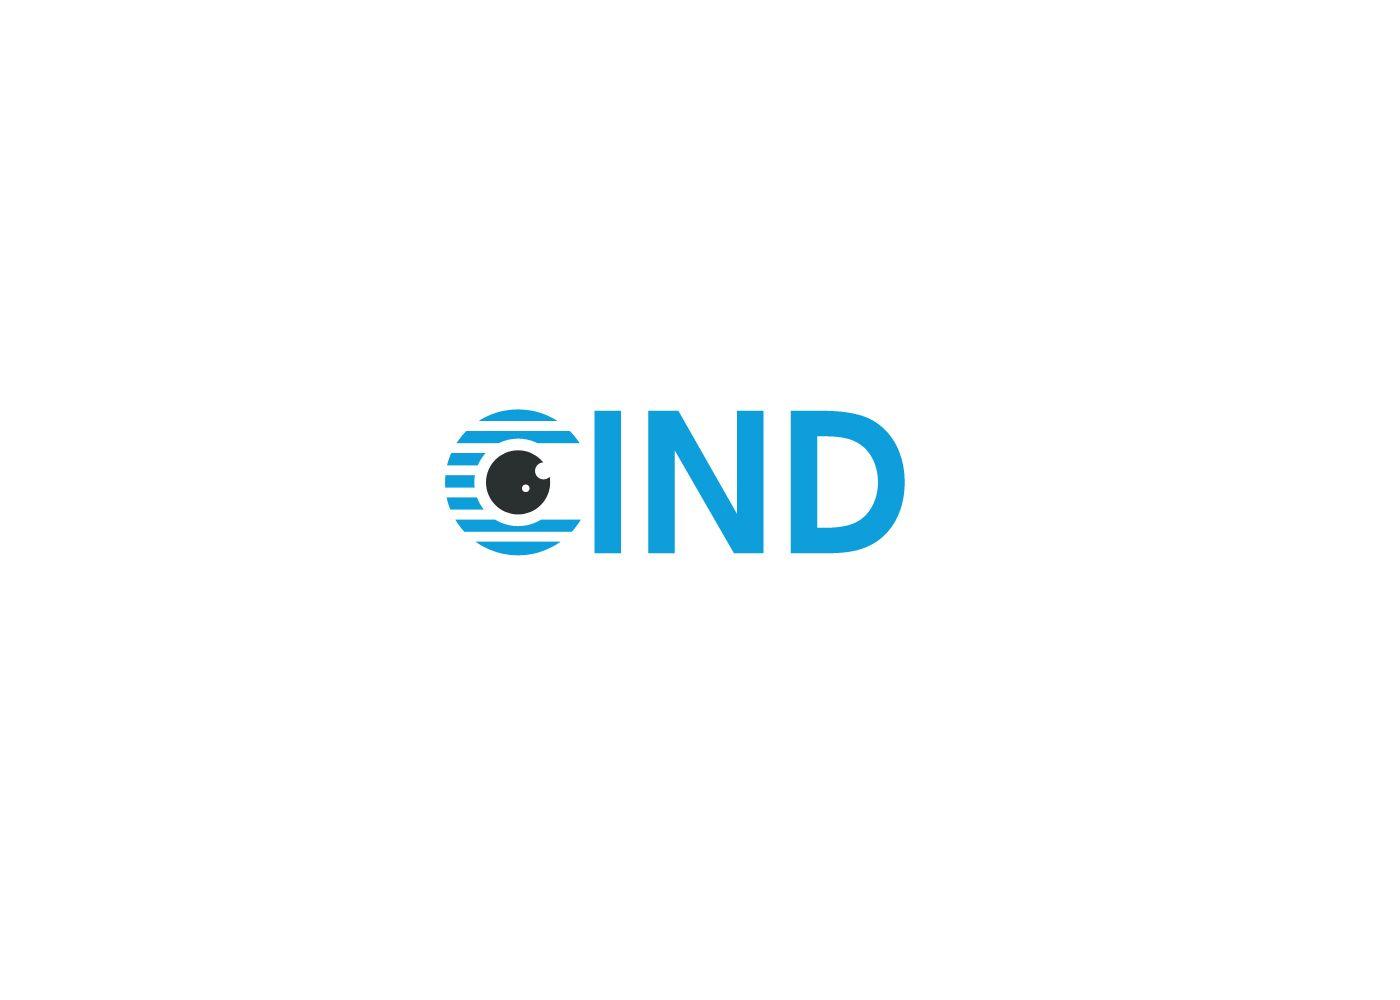 Ind Logo - Modern, Upmarket, It Company Logo Design for CIND or C-IND by ...